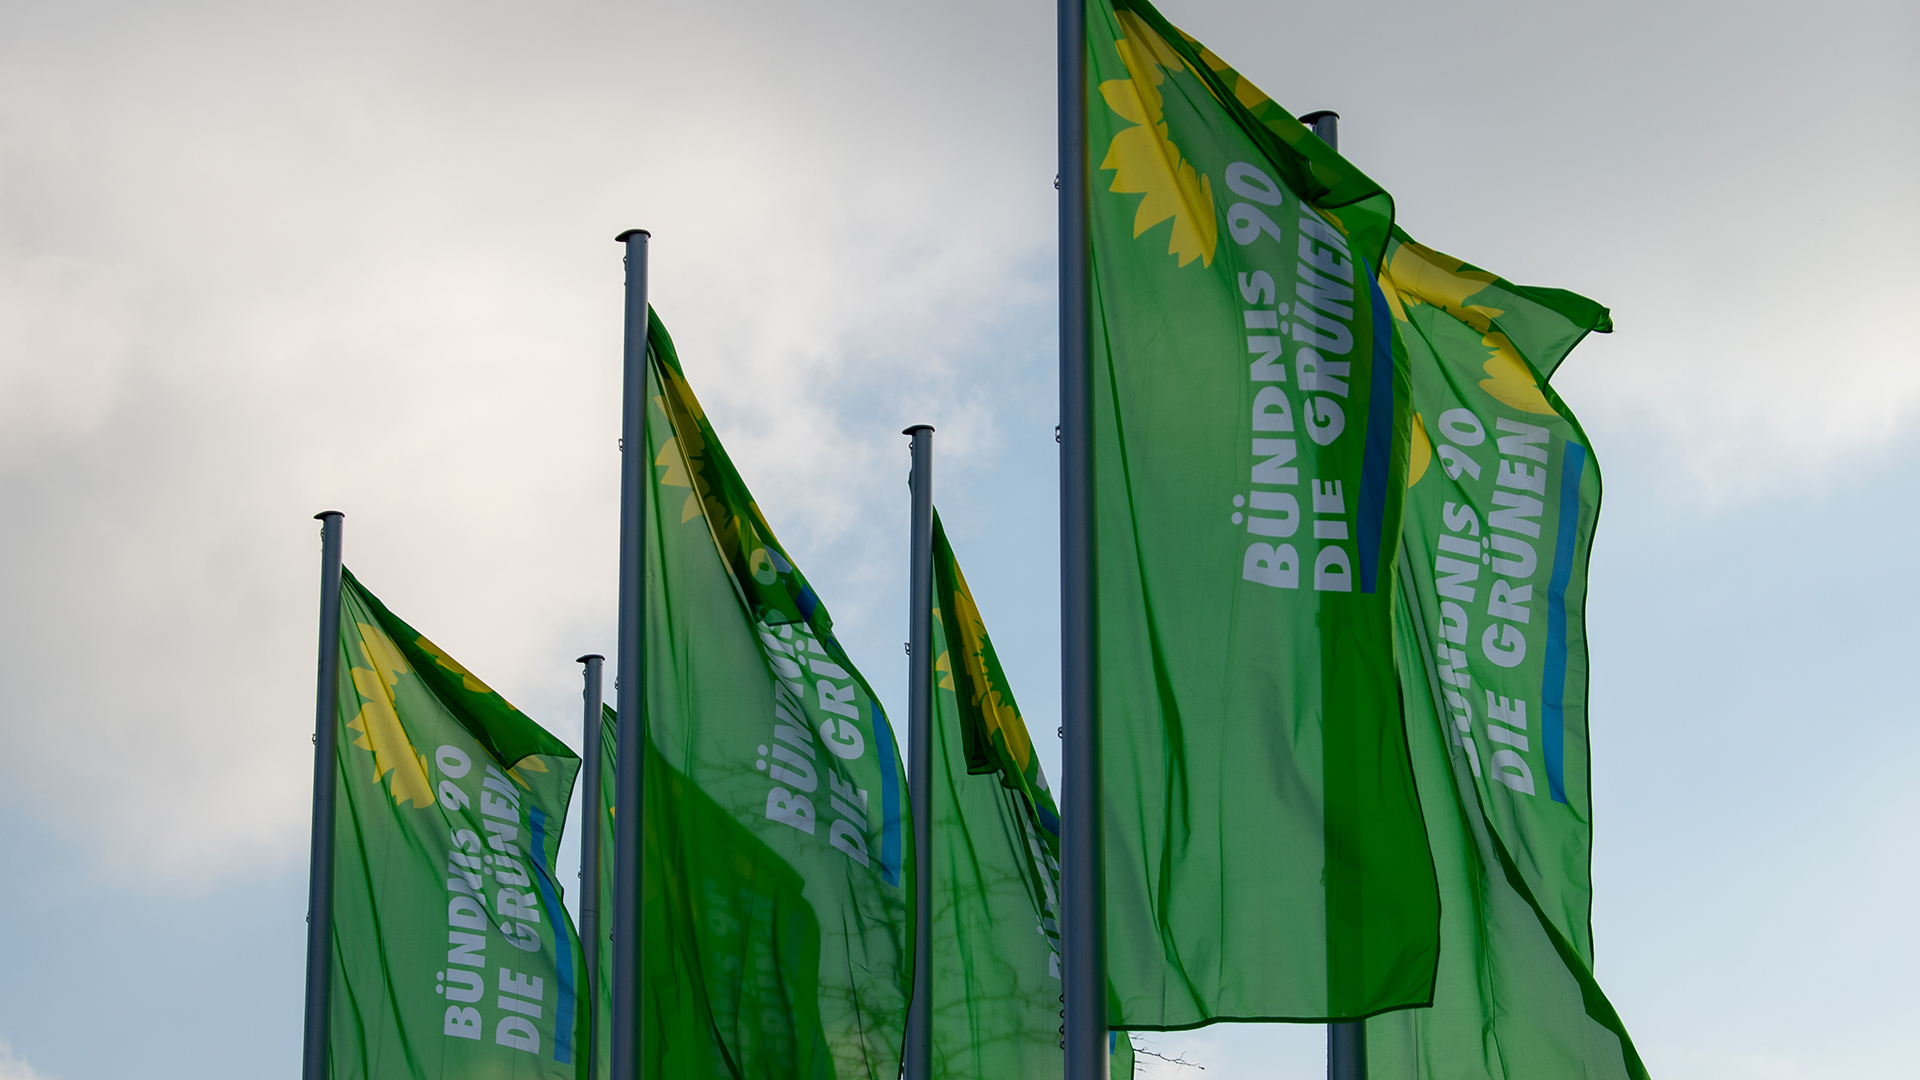 Flaggen mit dem Logo von Bündnis 90/Die Grünen wehen im Wind.